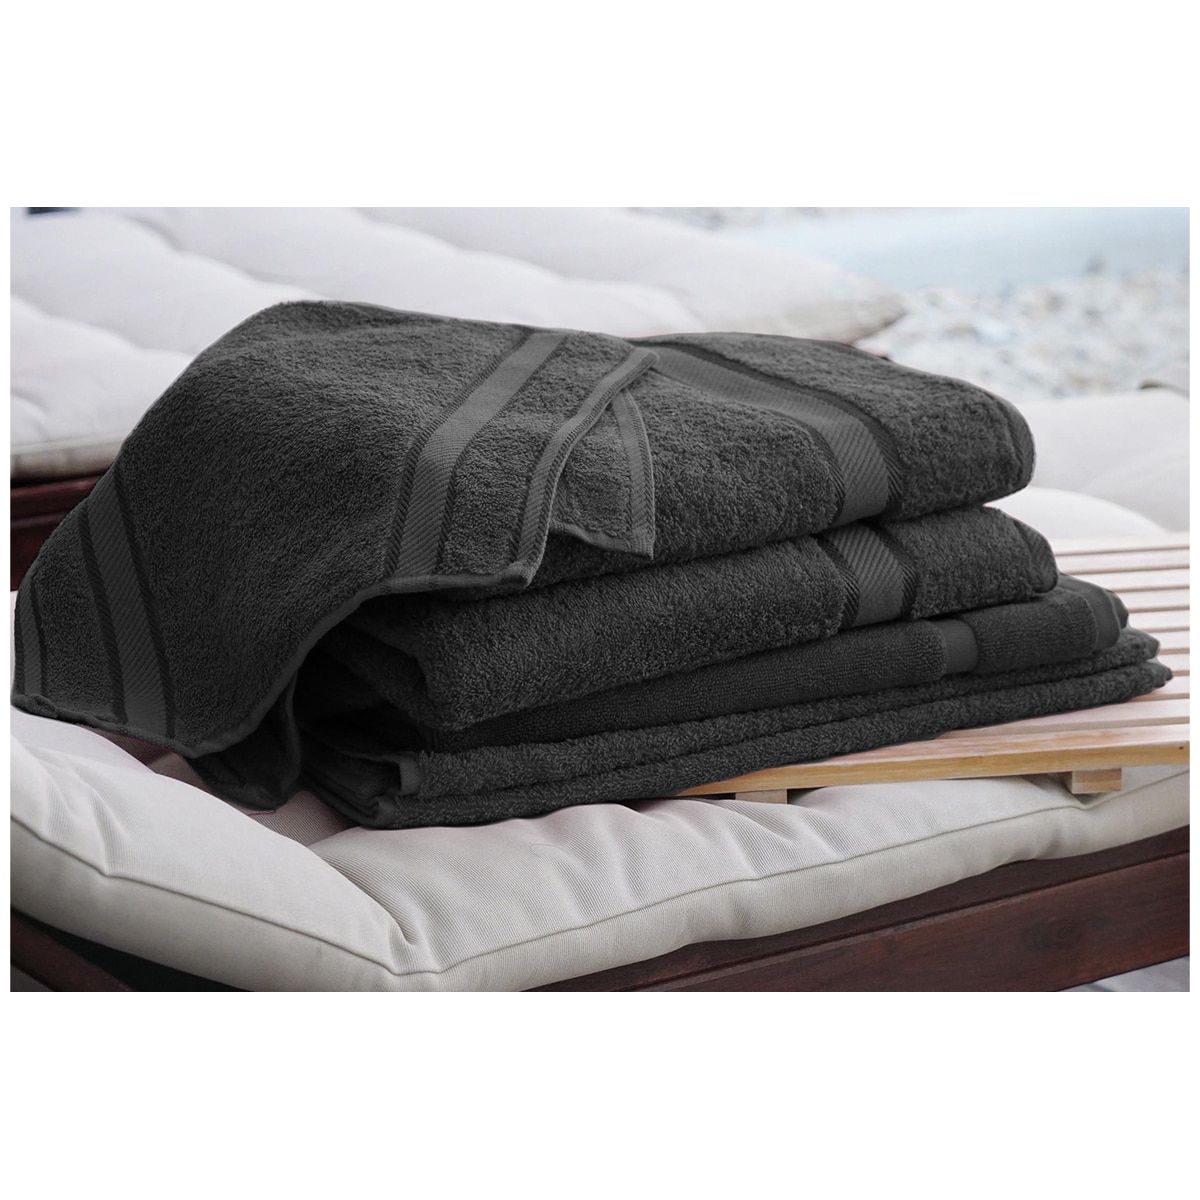 Kingtex Plain dyed 100% Combed Cotton towel range 550gsm Bath Sheet set 7 piece - Black